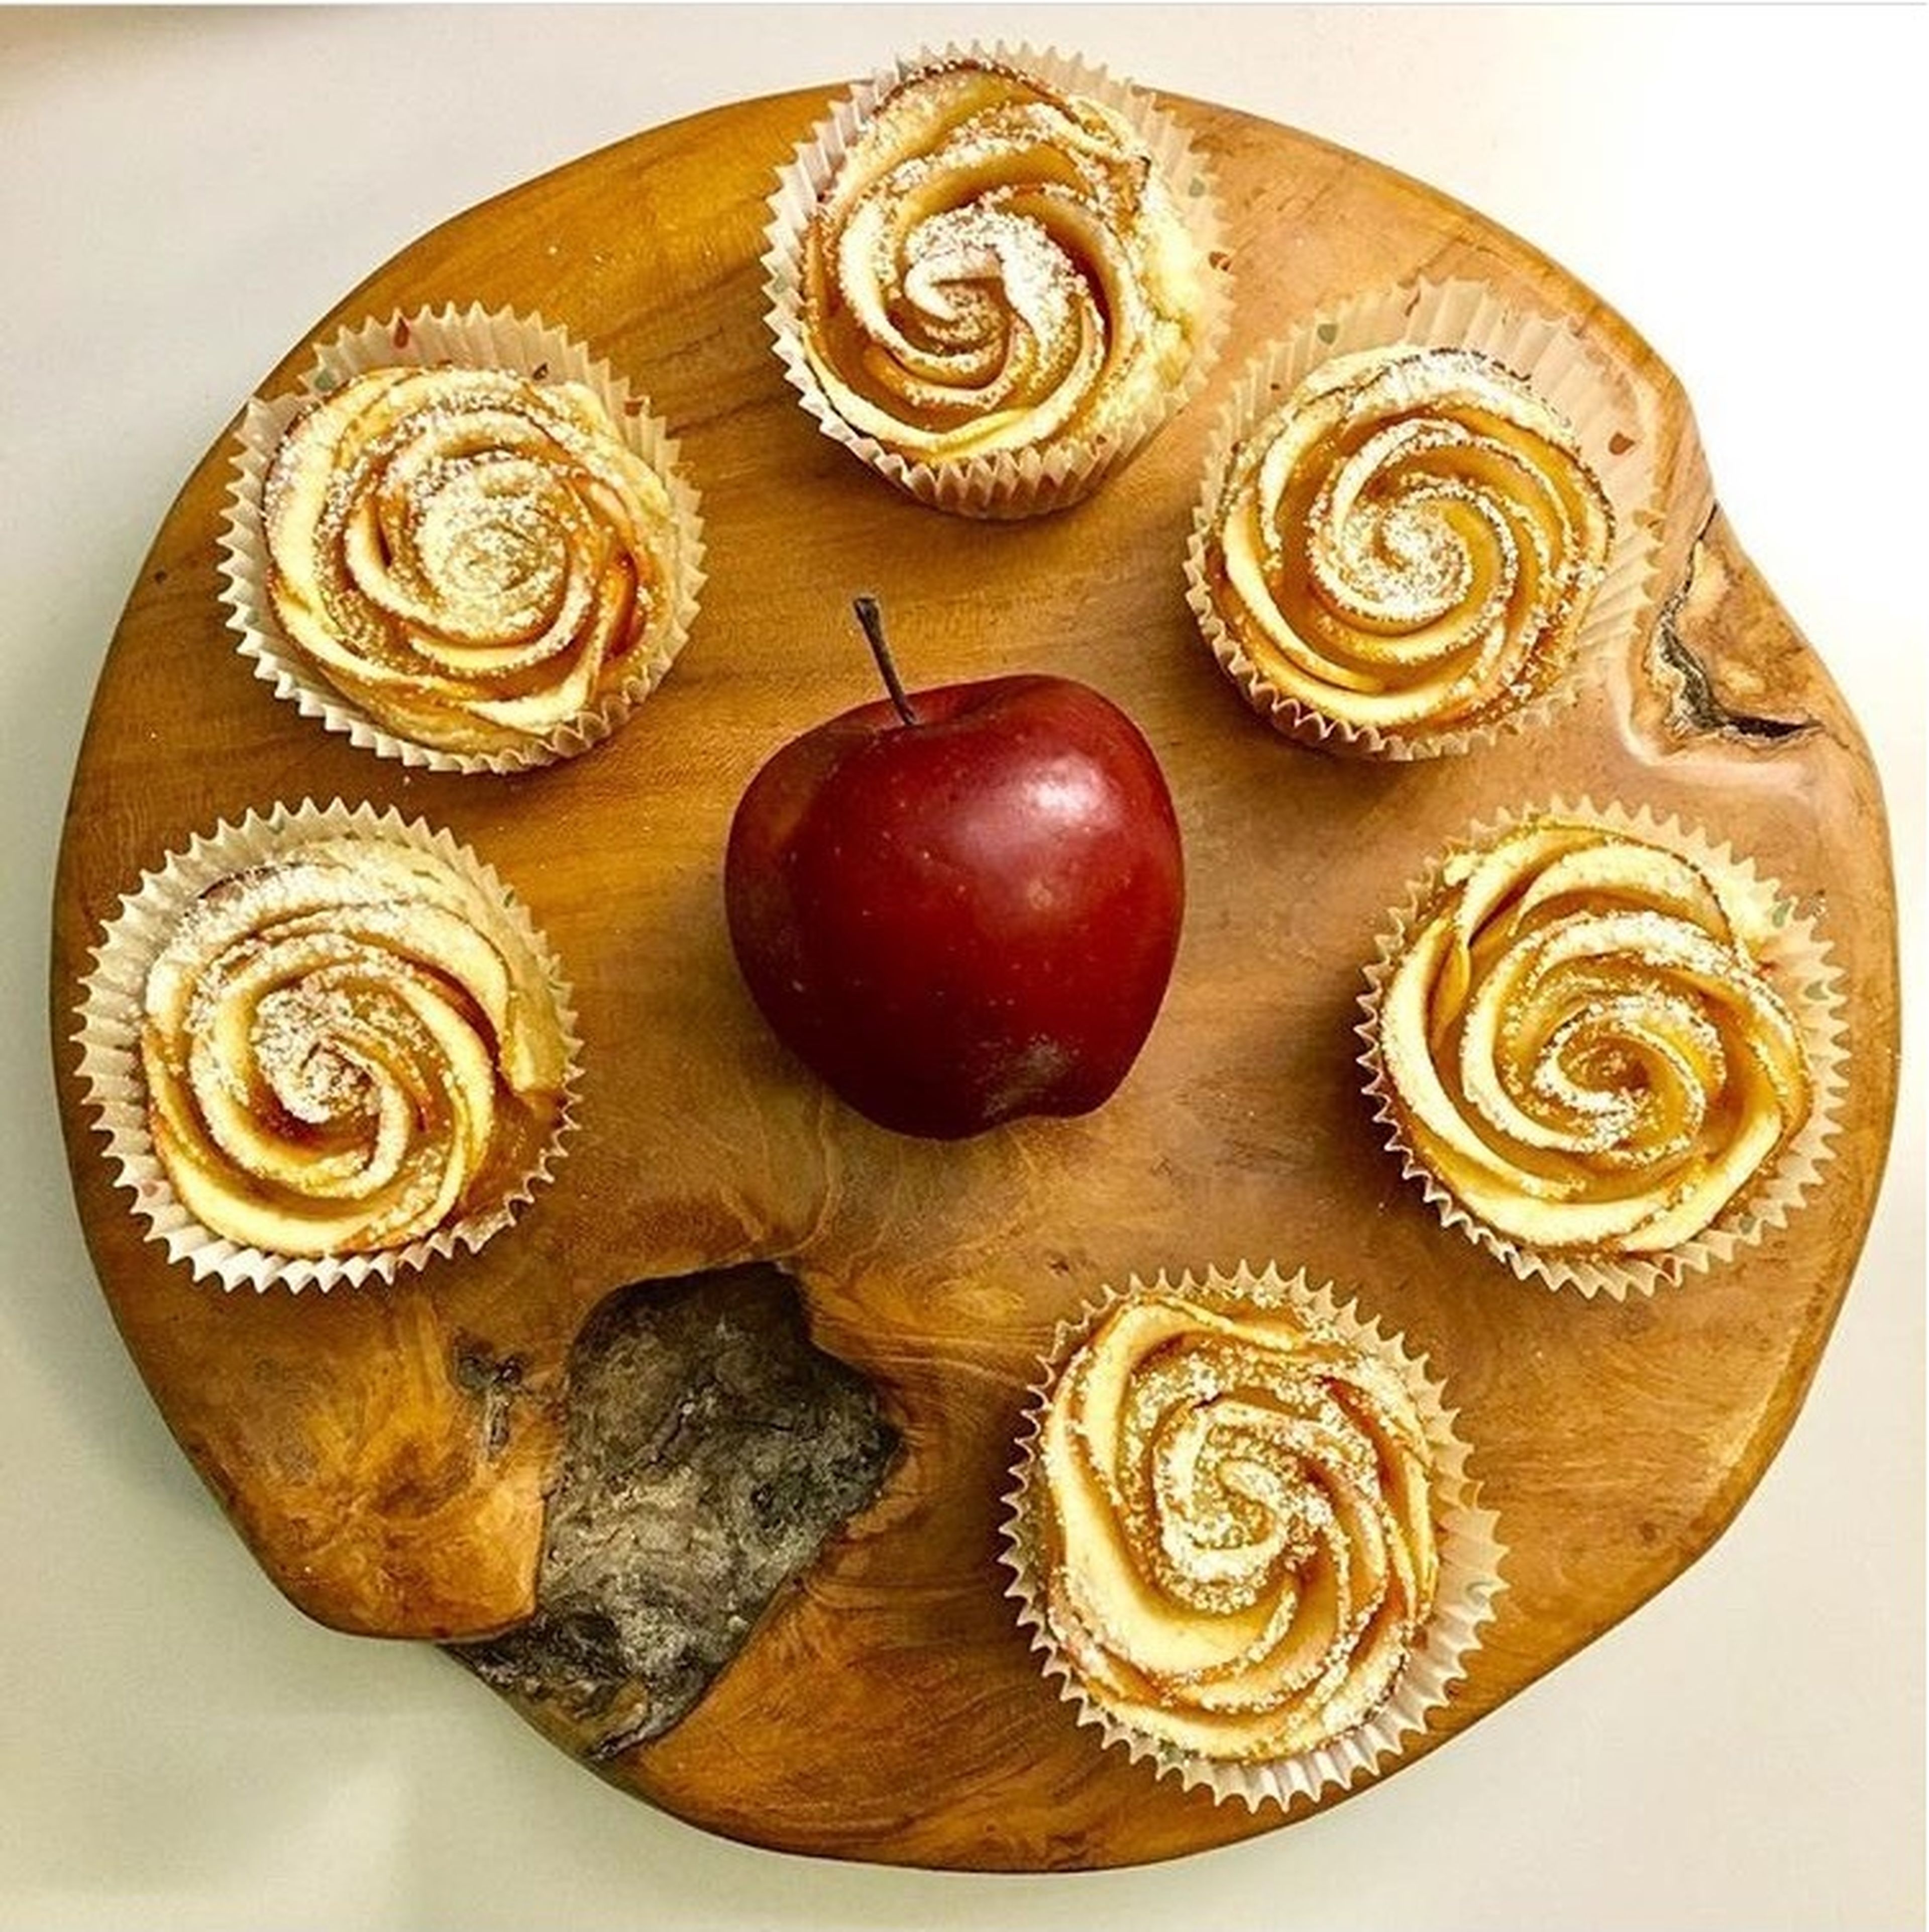 Rosen Cupcakes